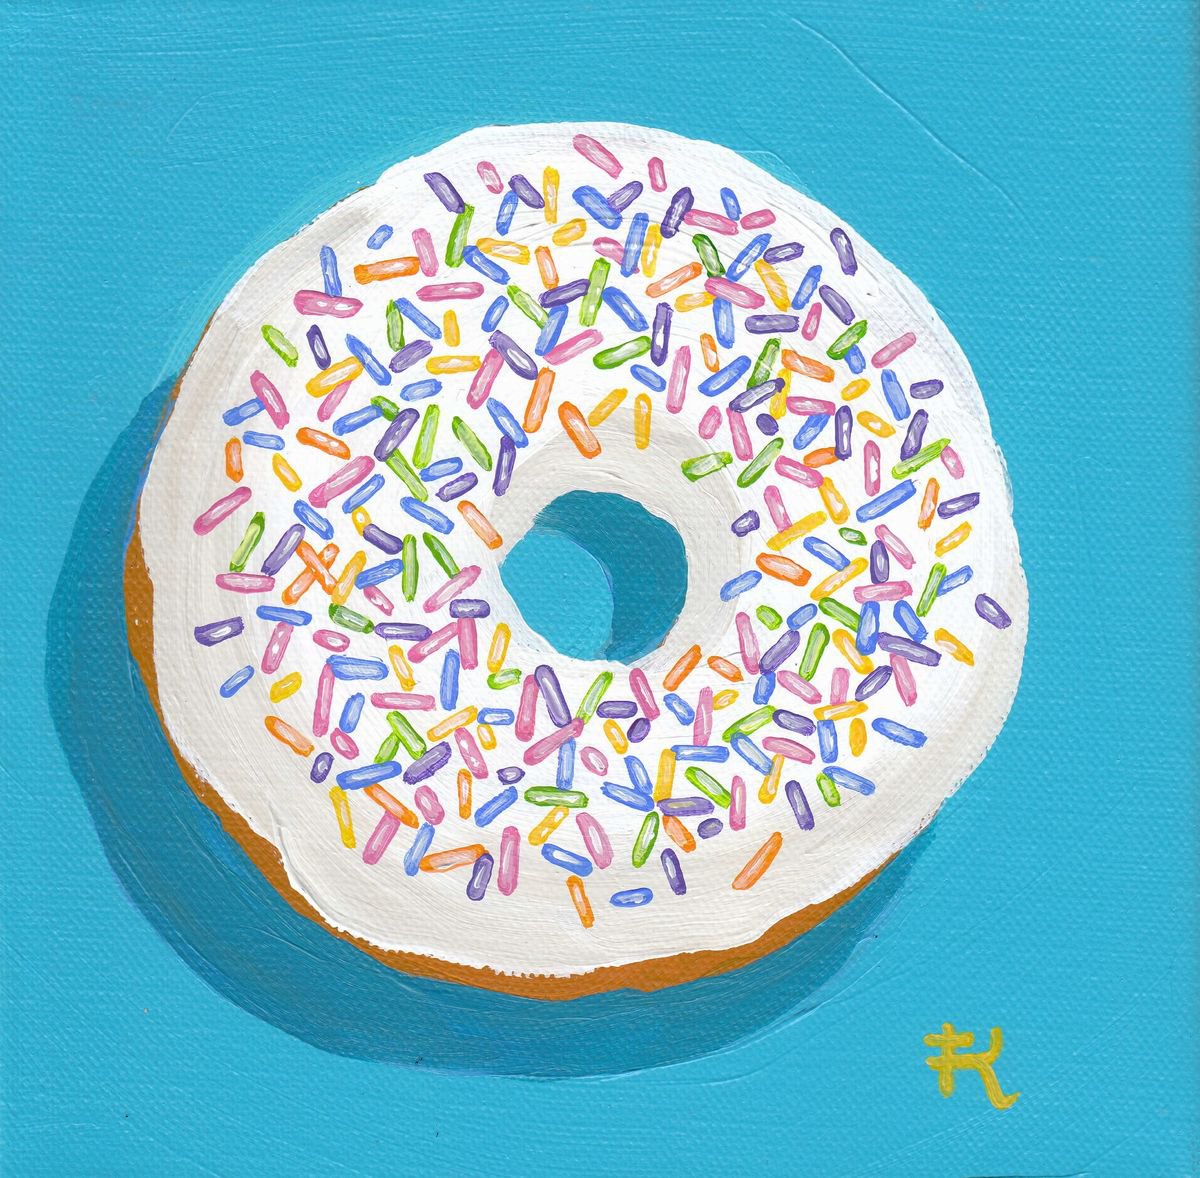 White with Rainbow Sprinkles by Terri Kelleher